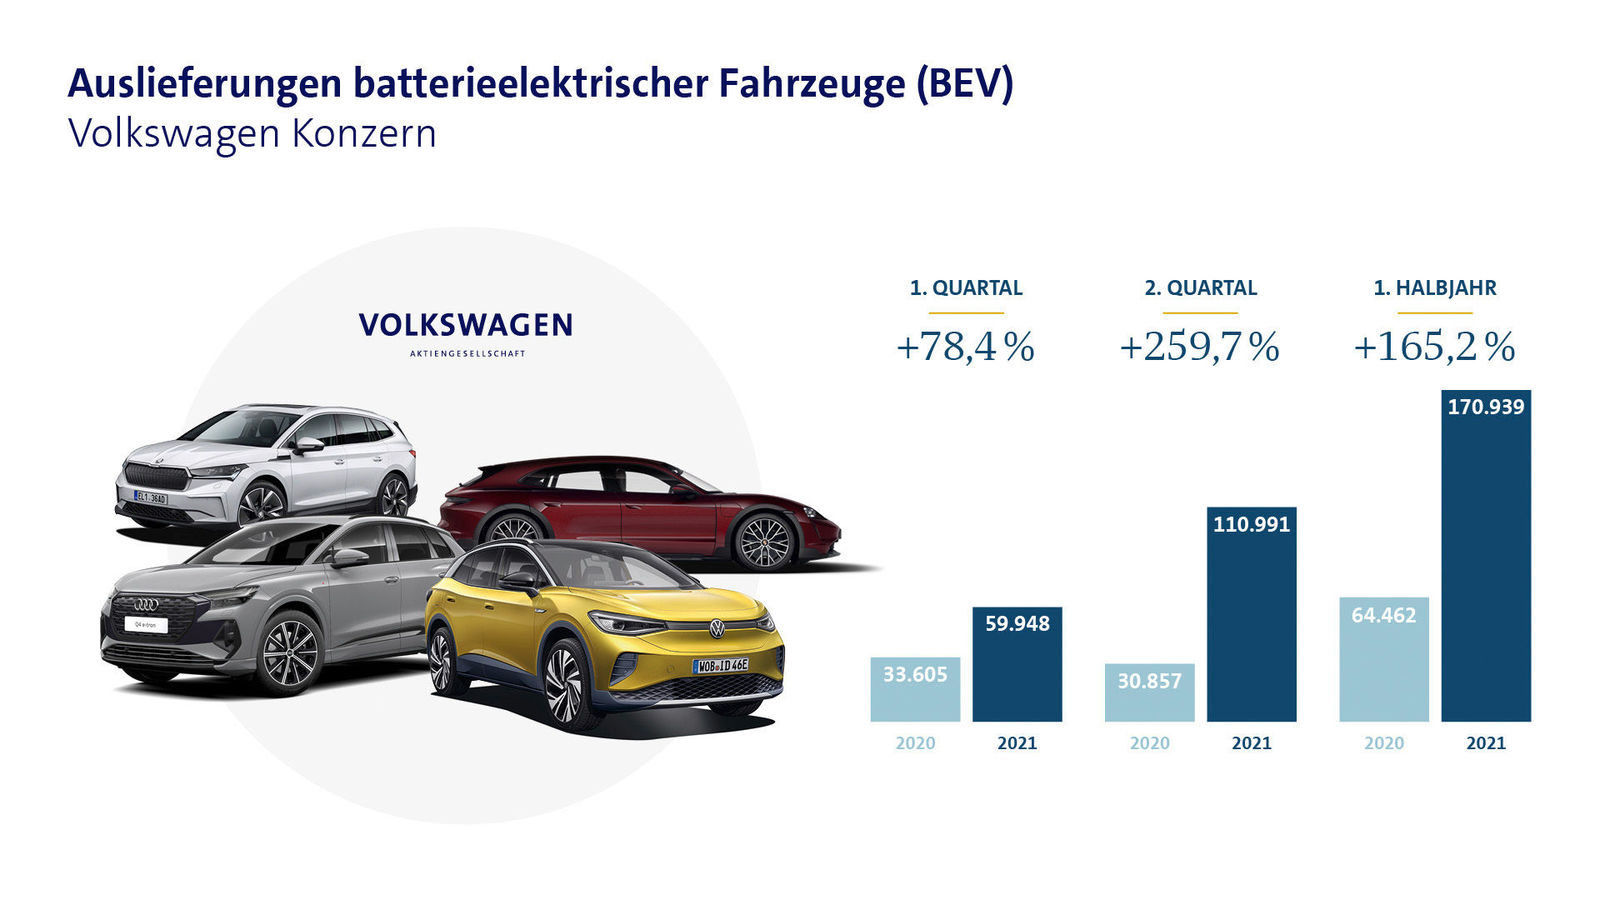 Volkswagen Konzern liefert im ersten Halbjahr mehr als doppelt so viele reine E-Fahrzeuge aus